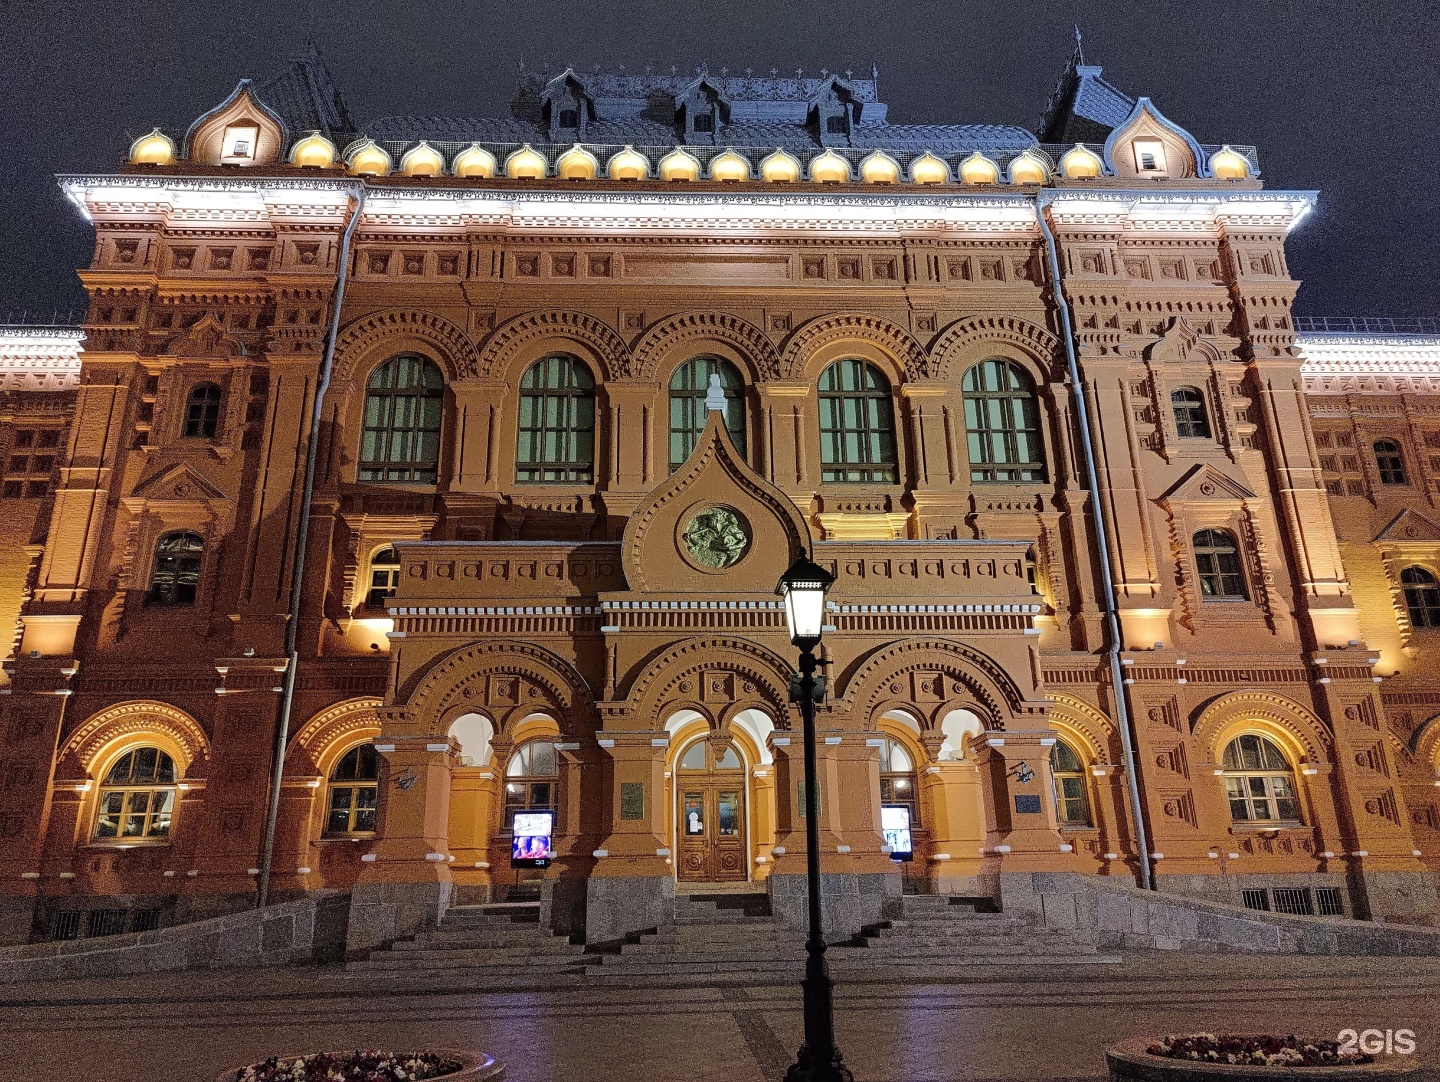 музей 1812 года в москве на красной площади